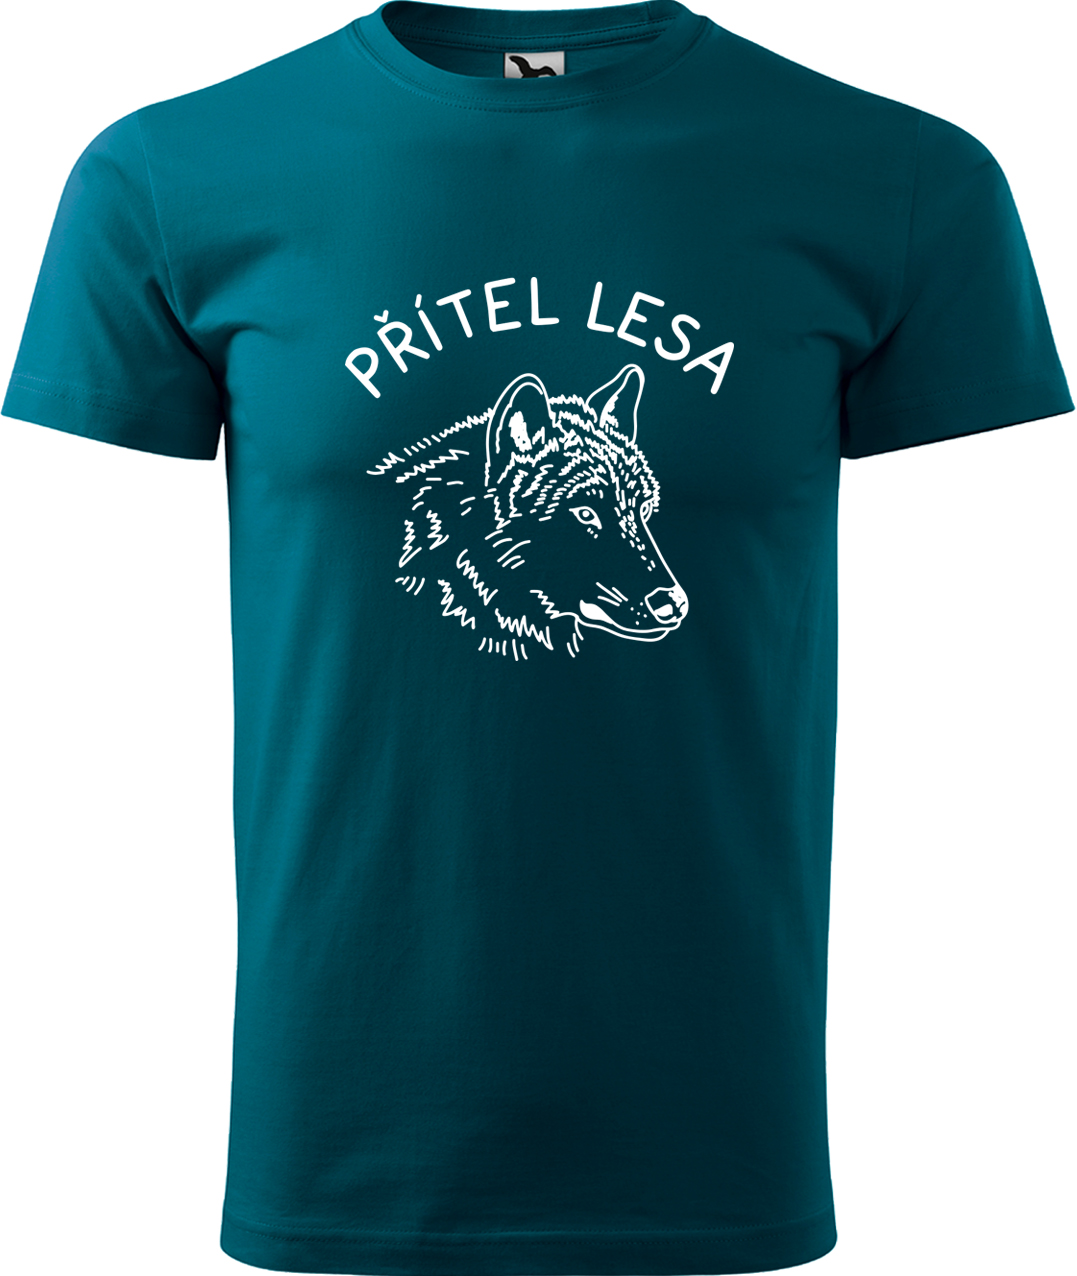 Pánské tričko s vlkem - Přítel lesa Velikost: XL, Barva: Petrolejová (93), Střih: pánský